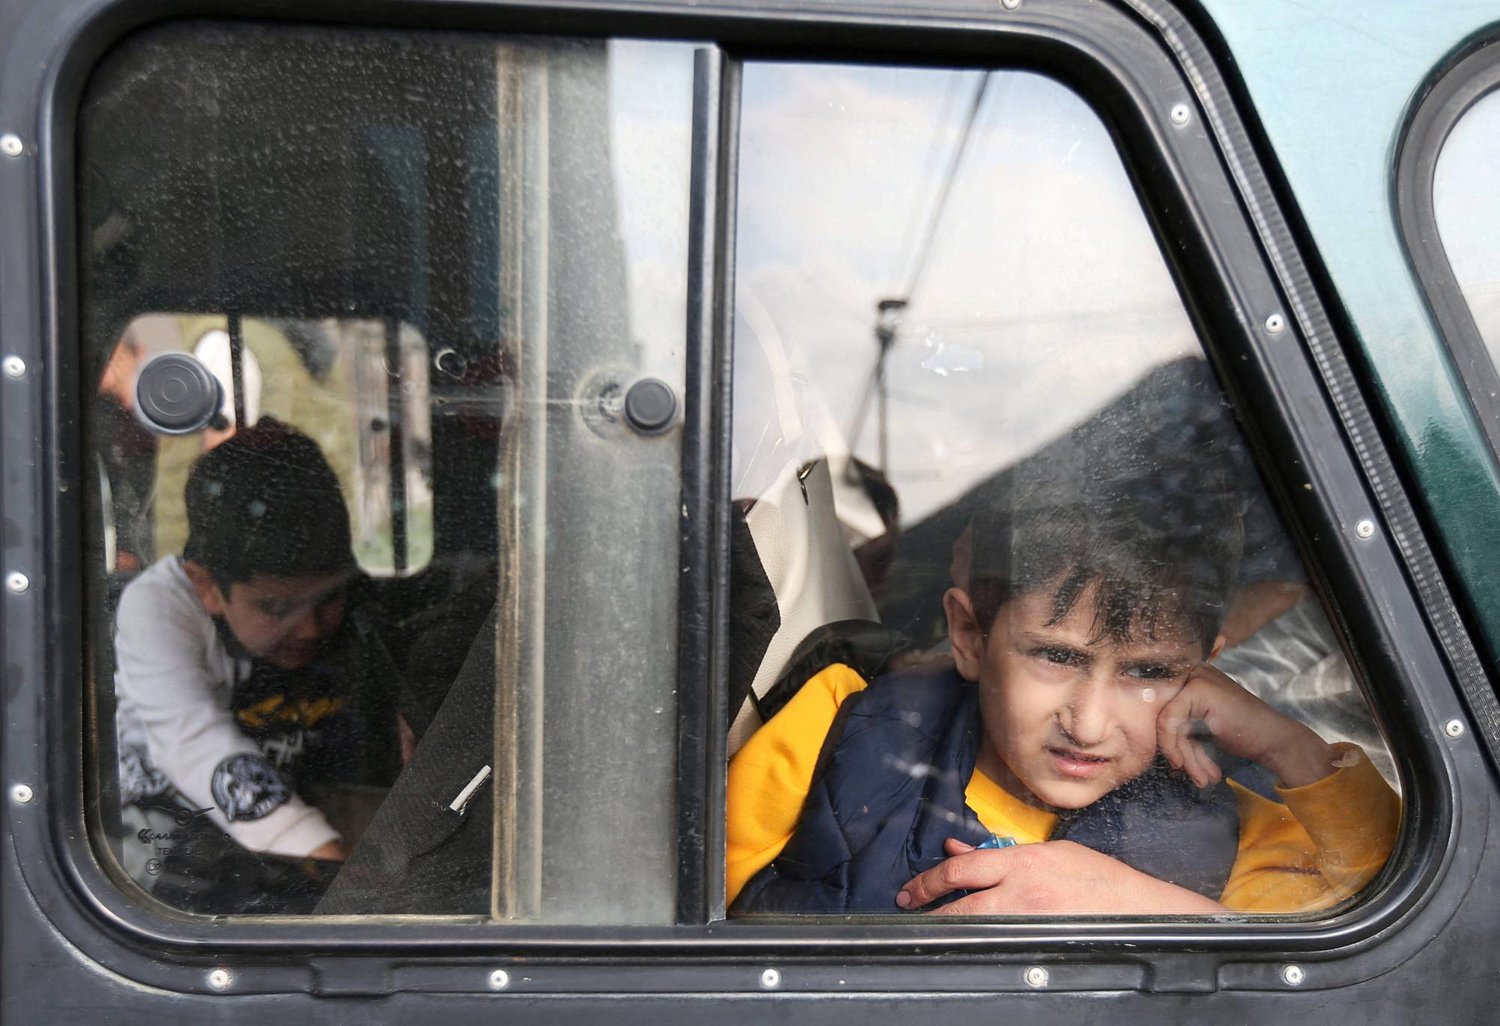 صبي لاجئ من منطقة ناغورنو كاراباخ ينظر من نافذة السيارة عند وصوله إلى مركز إقامة مؤقت في بلدة غوريس بأرمينيا (رويترز)